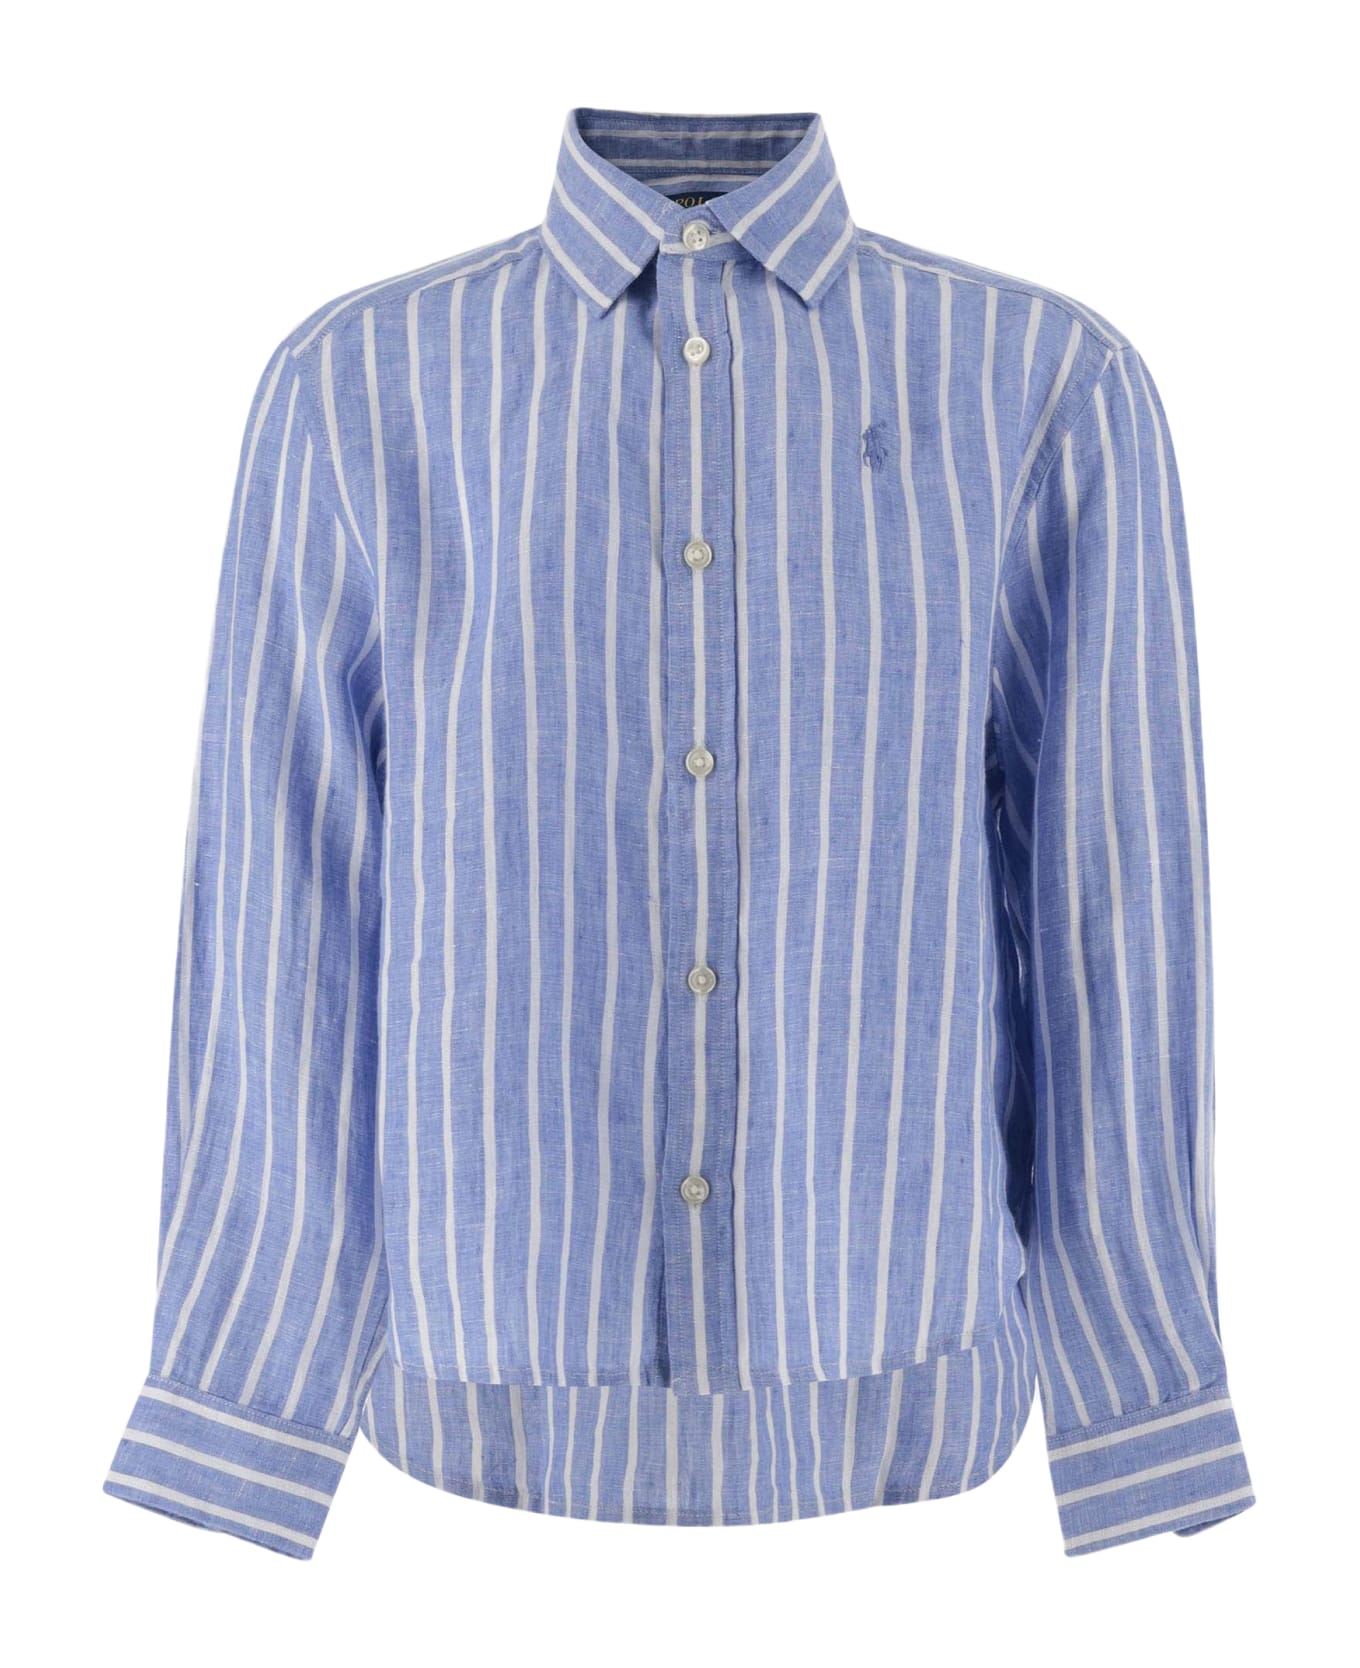 Ralph Lauren Striped Linen Shirt With Logo - Blue